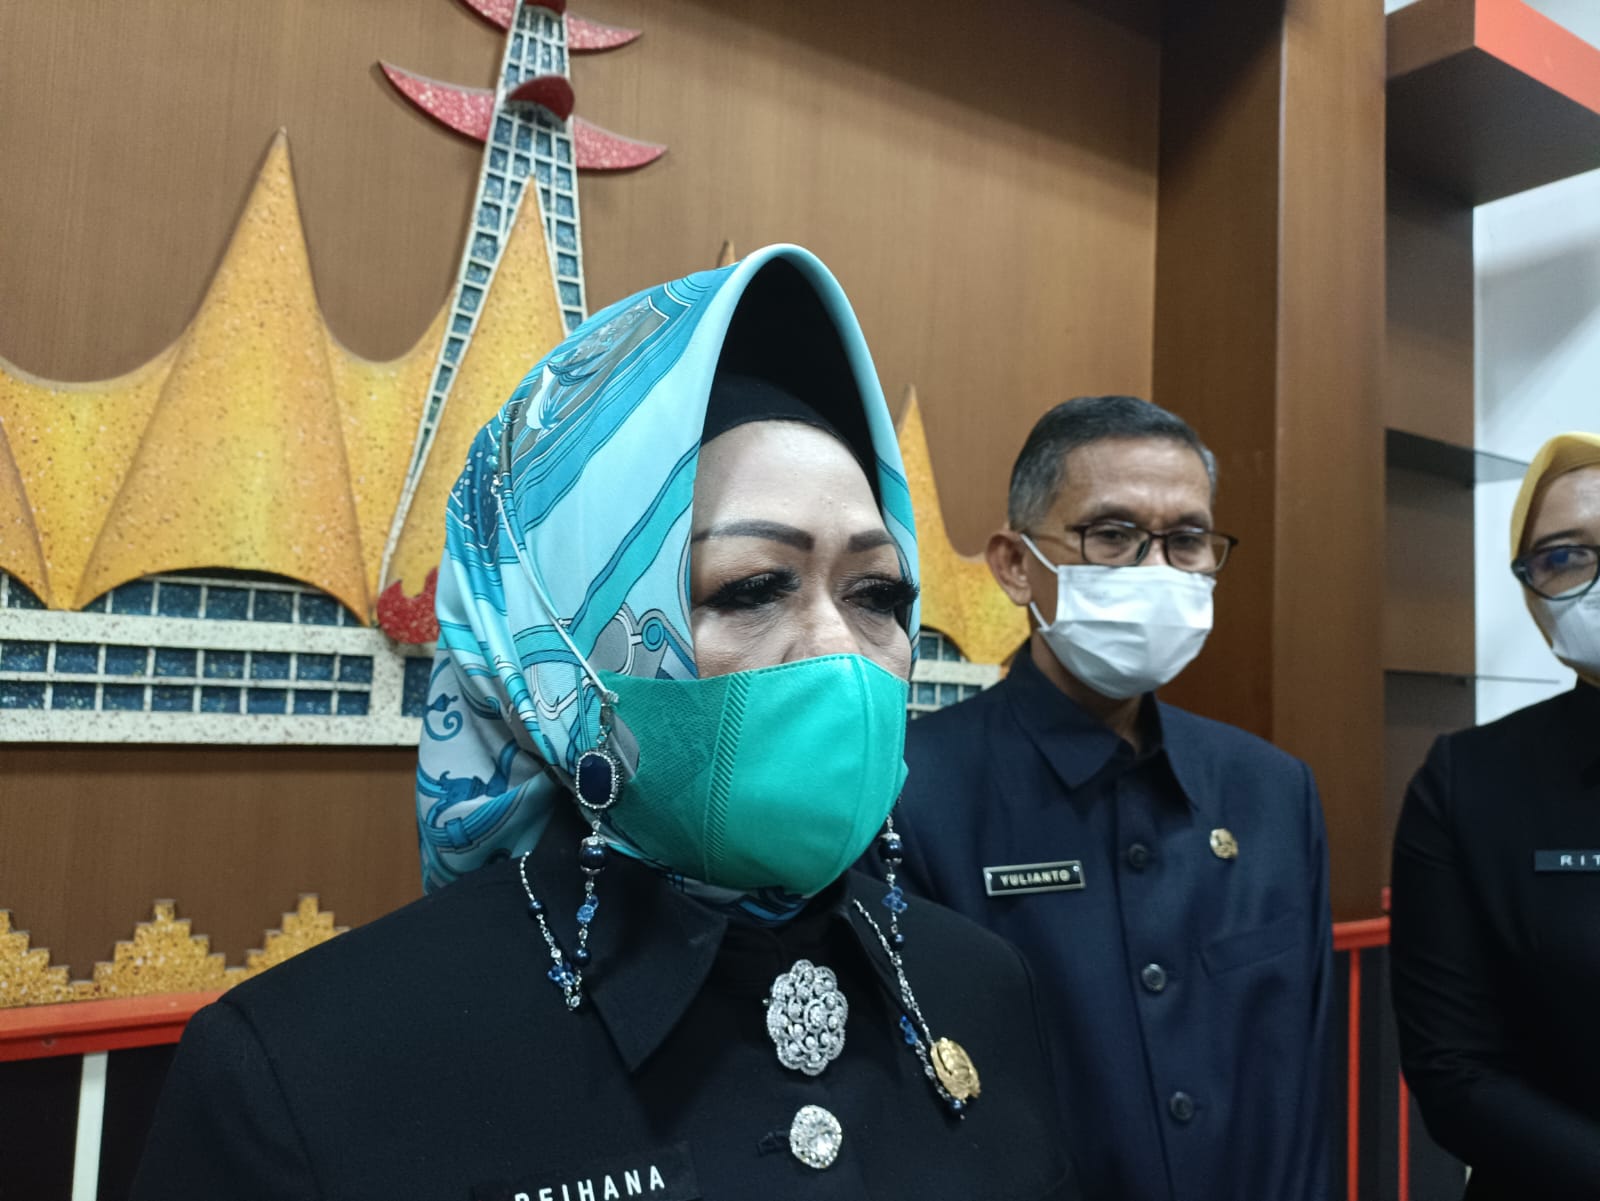 KPK Undur Jadwal Pemeriksaan Kadiskes Lampung Reihana, Ternyata Ini 'Rayuan' yang Luluhkan Lembaga Anti Rasuah